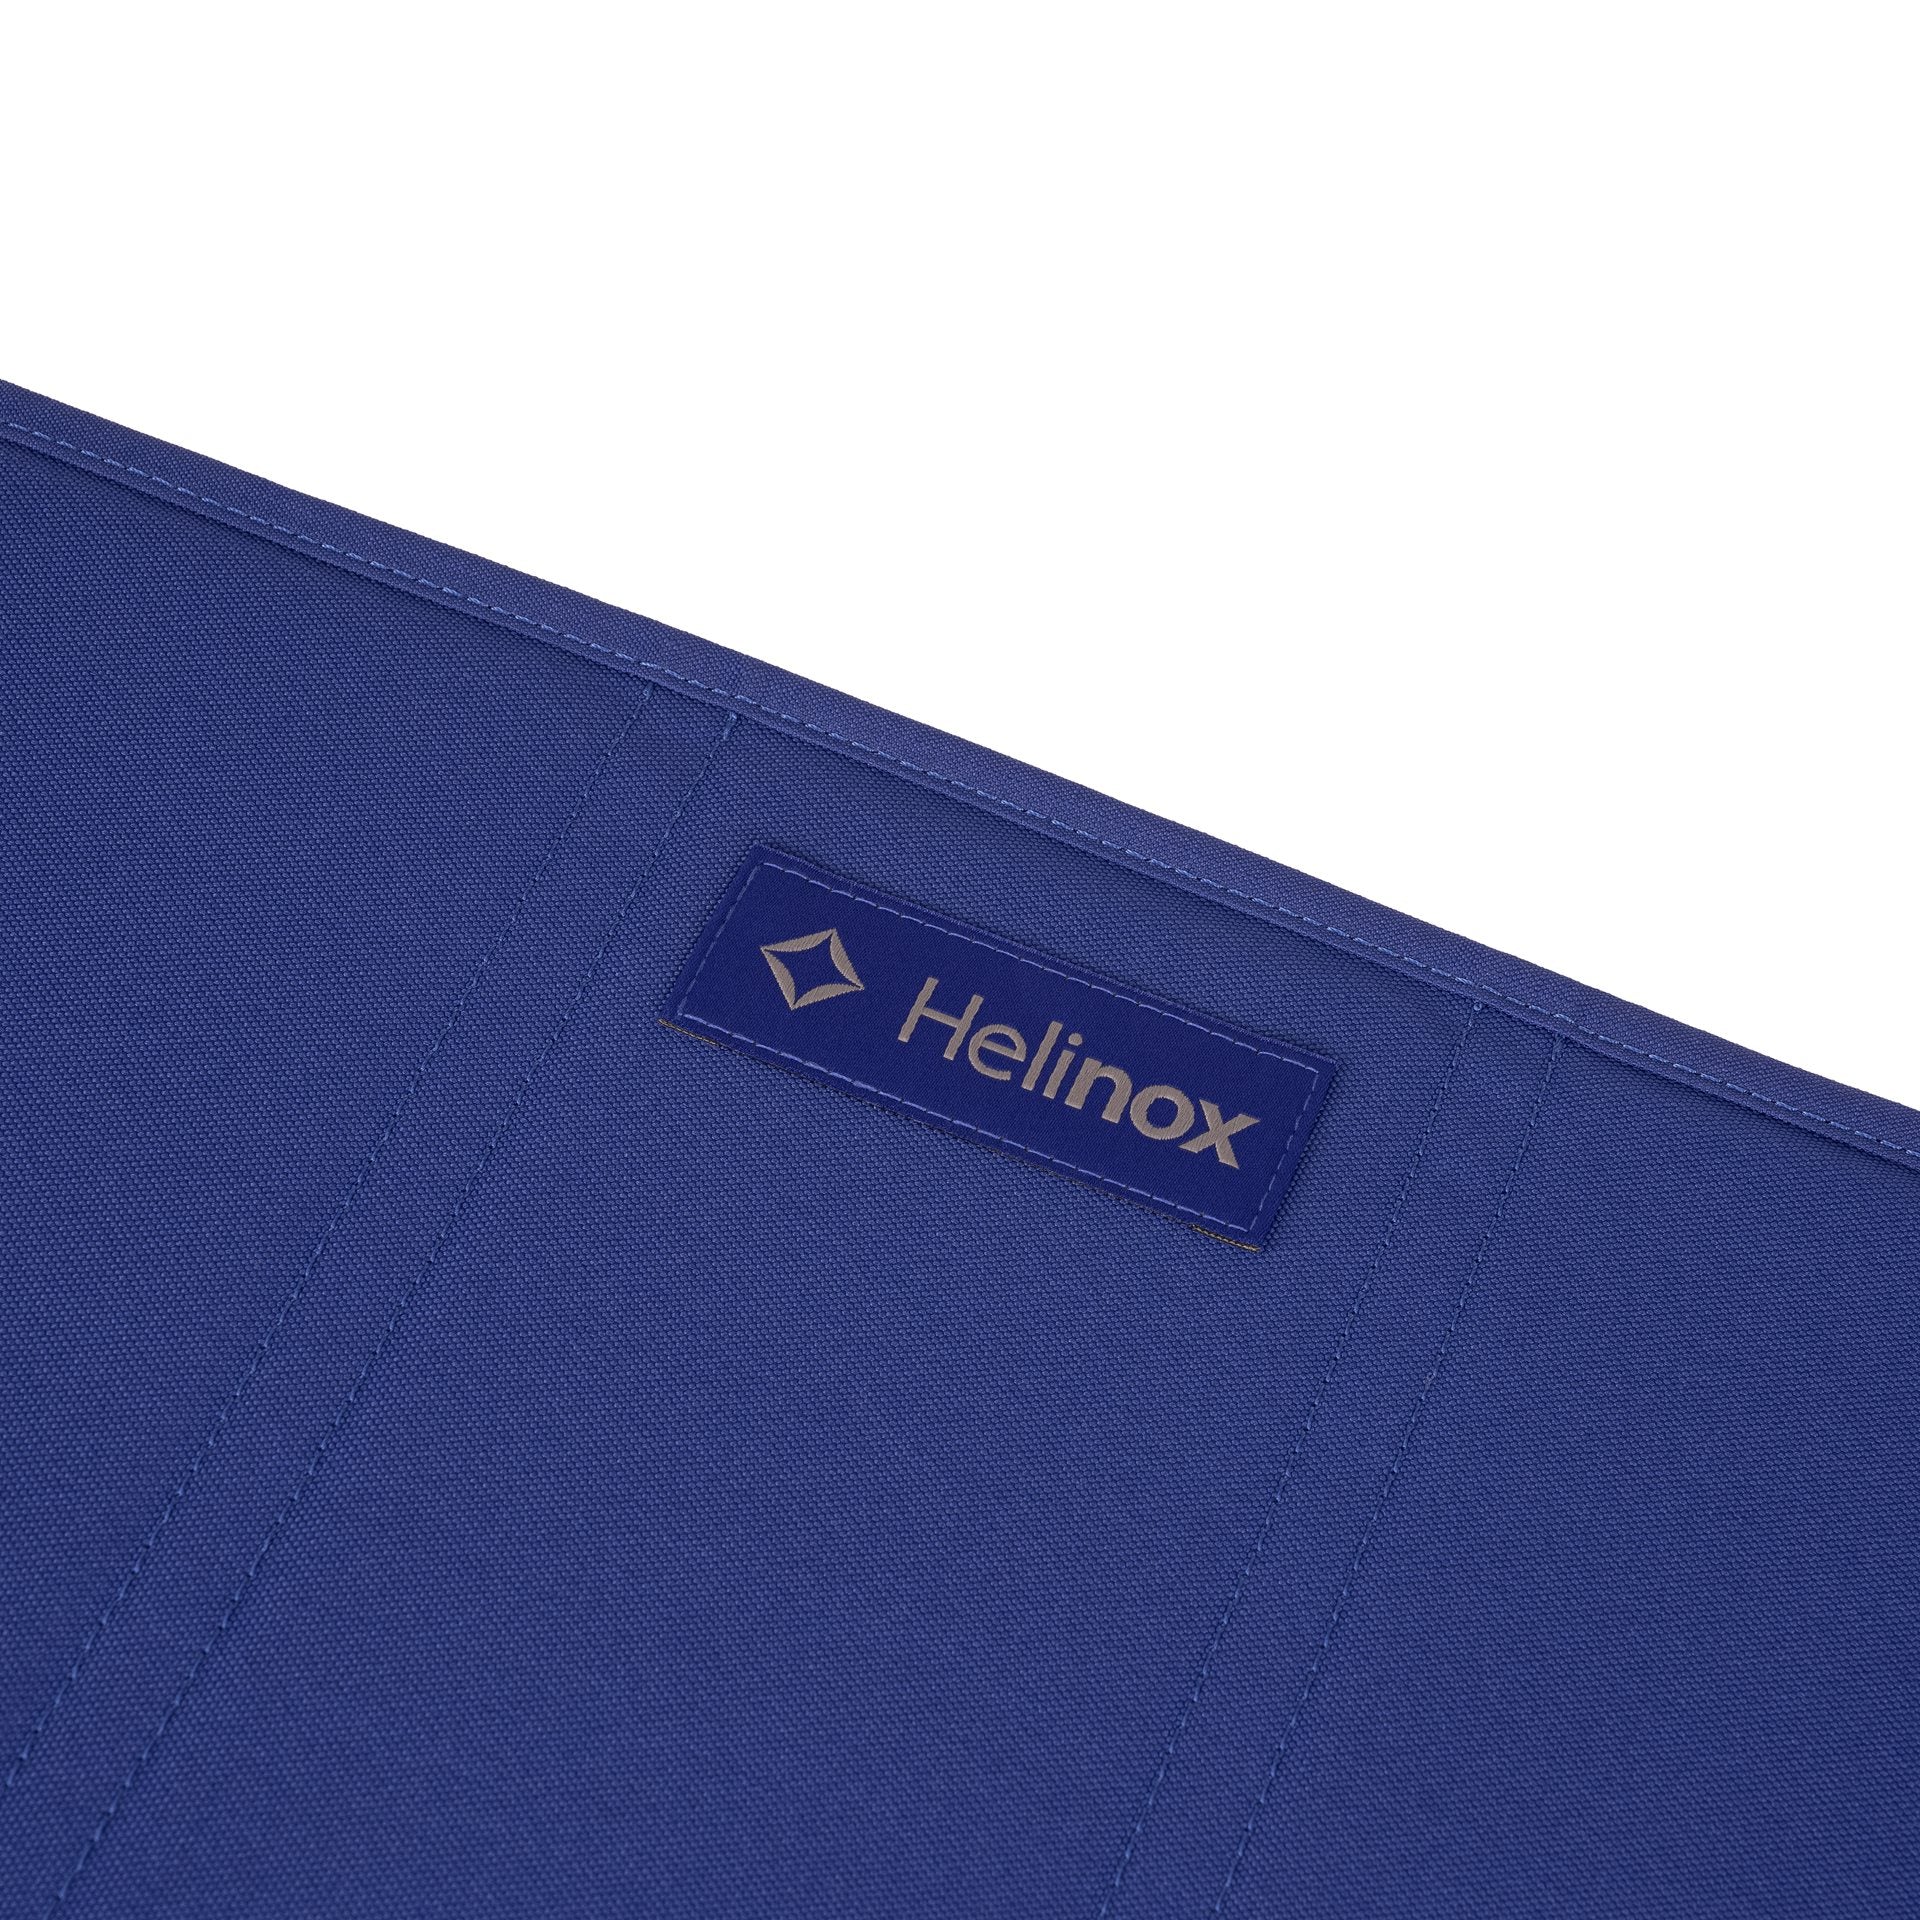 Helinox Table One  Hard Top - Kampeertafel Medium- Cobalt Campingtafel - Reisartikelen-nl